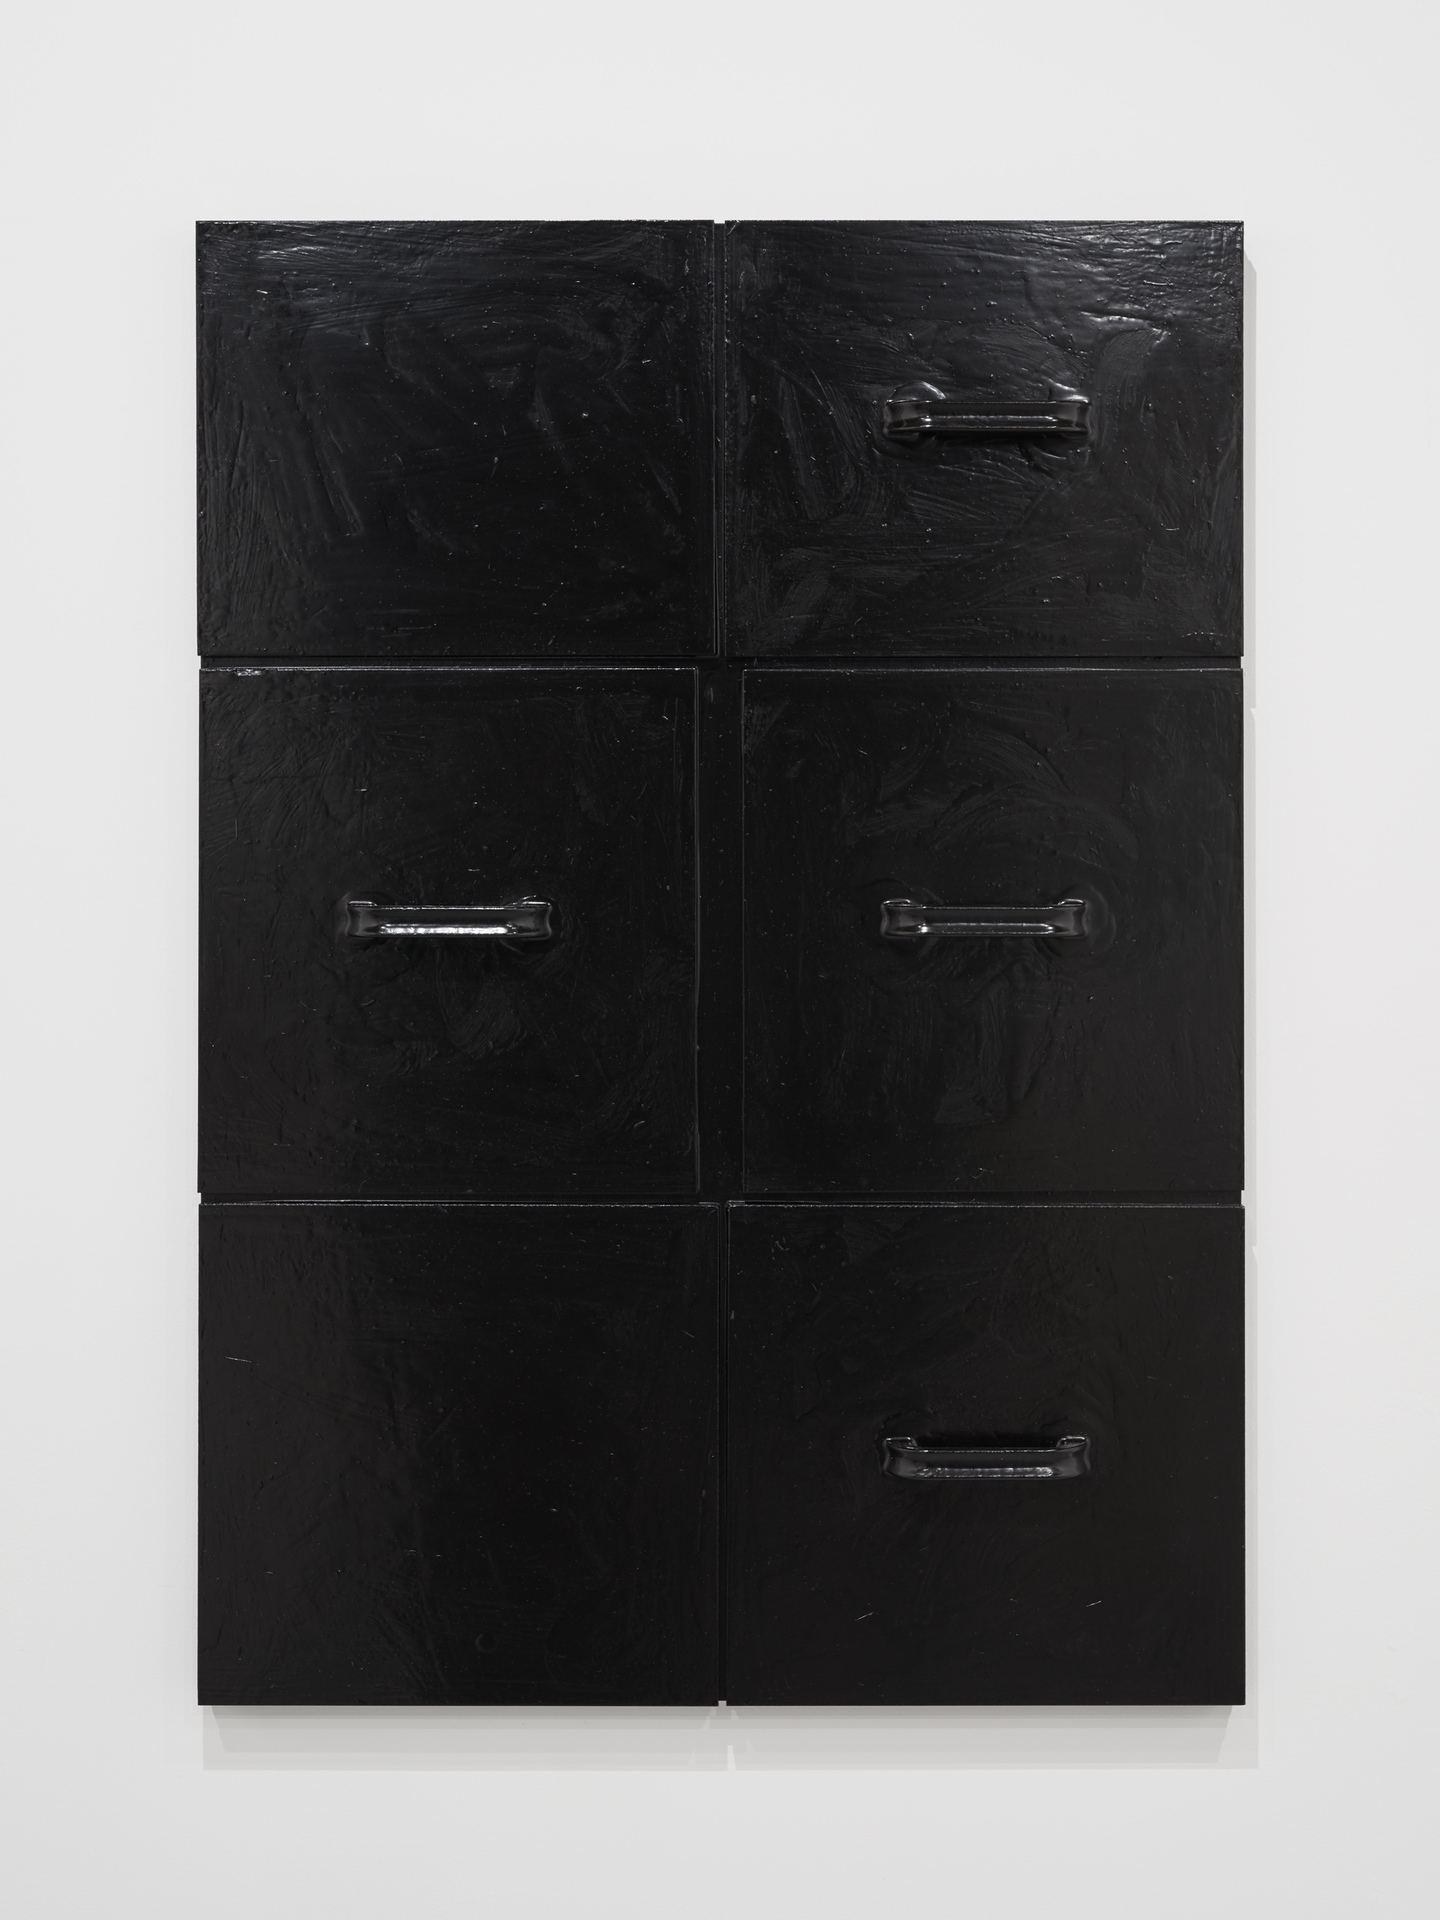 Jordan Derrien WHISTLE WHISTLE 2020 Wood, paint, glue 60x84 cm